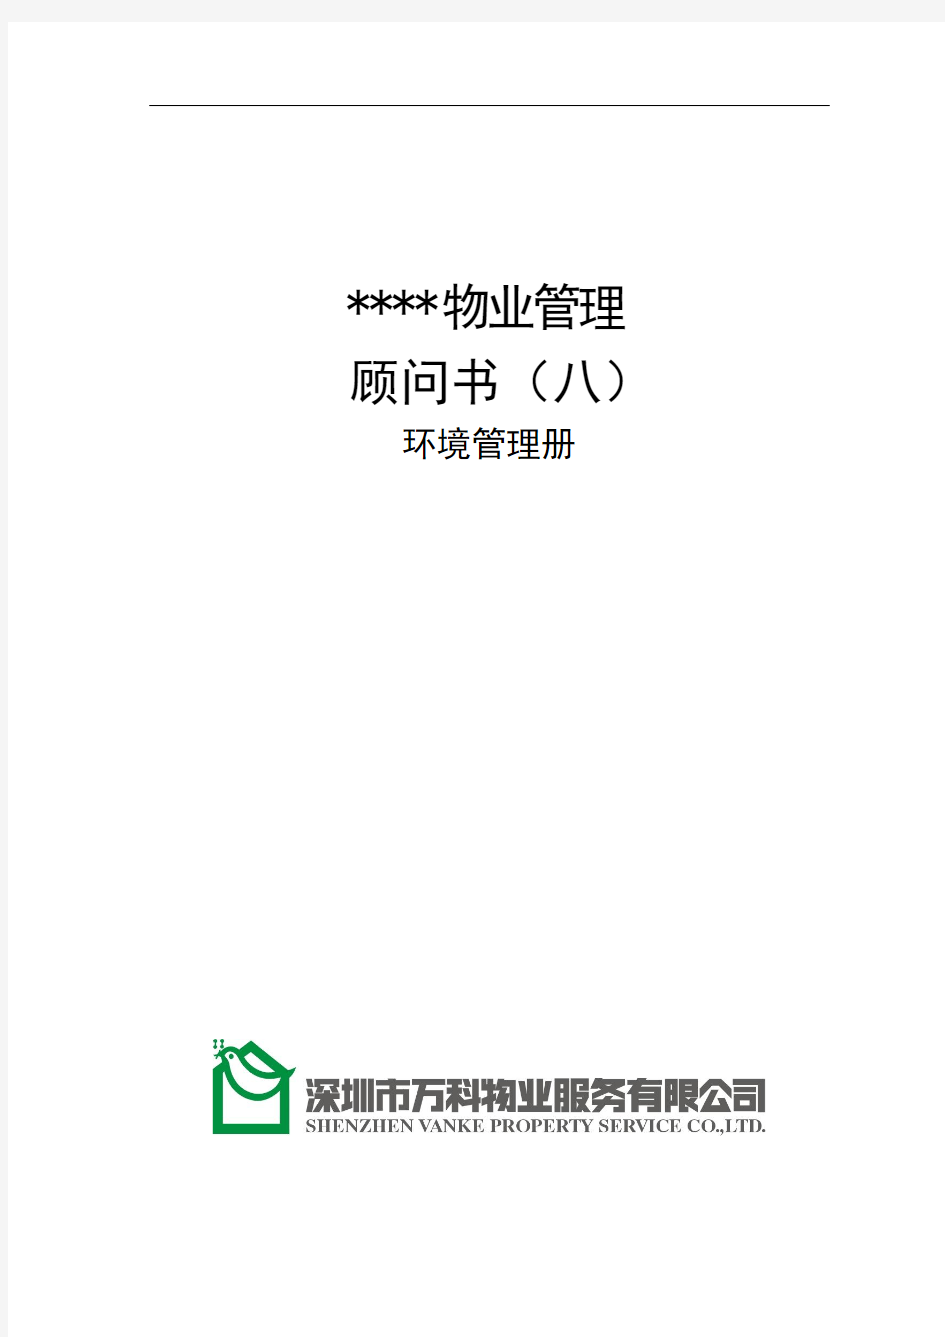 万科物业顾问书模版(8)环境管理册